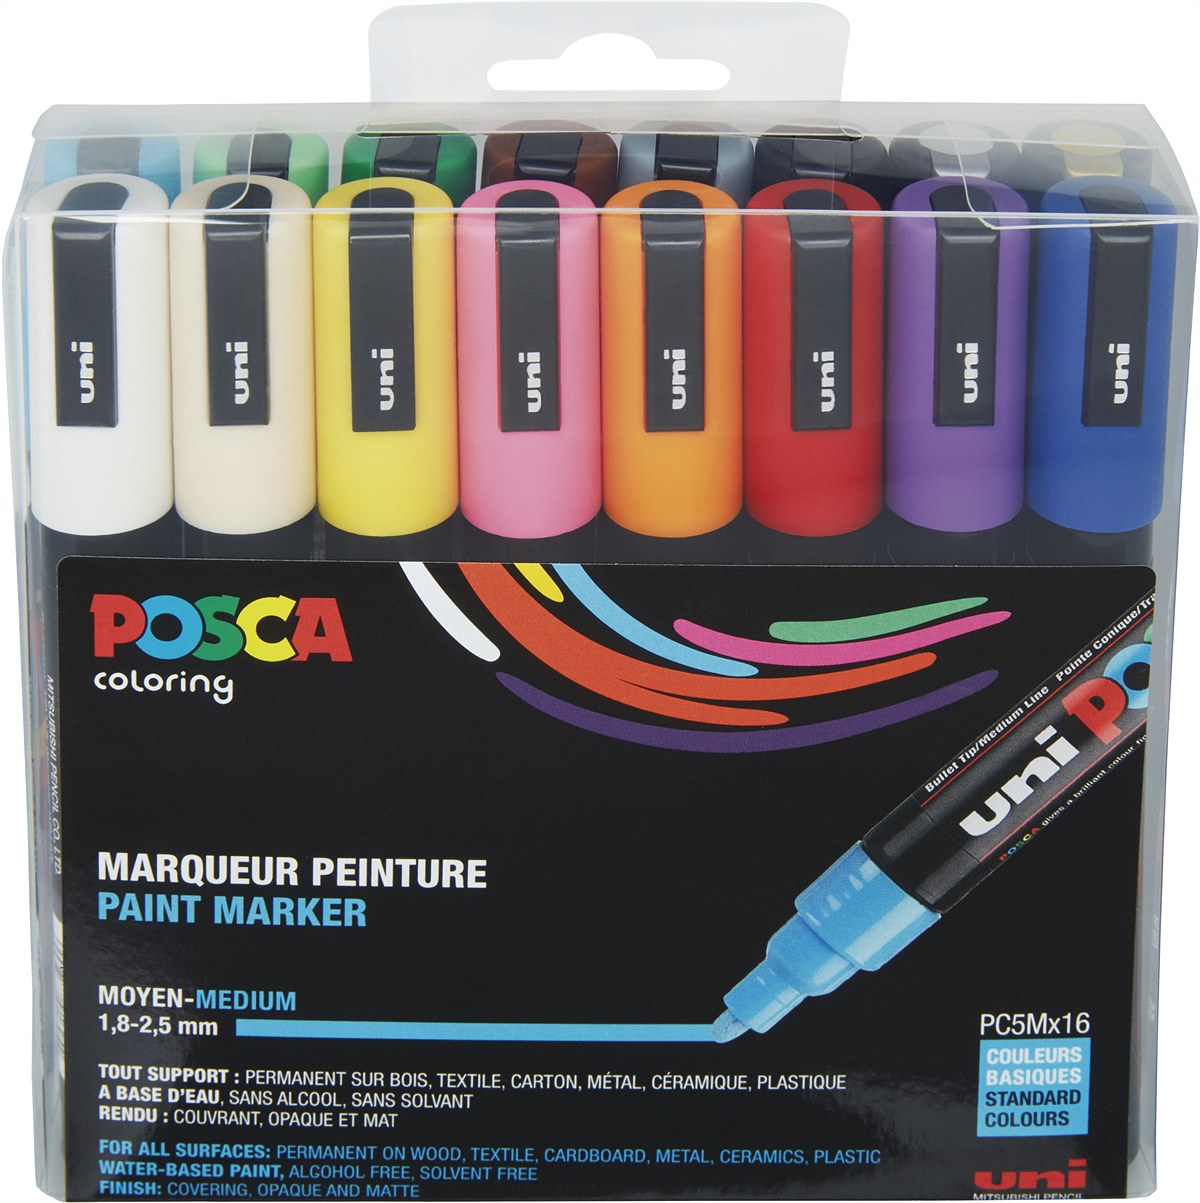 Faber-Castell_Paint marker UNI POSCA PC-5M 16 pack_EUR 72,00